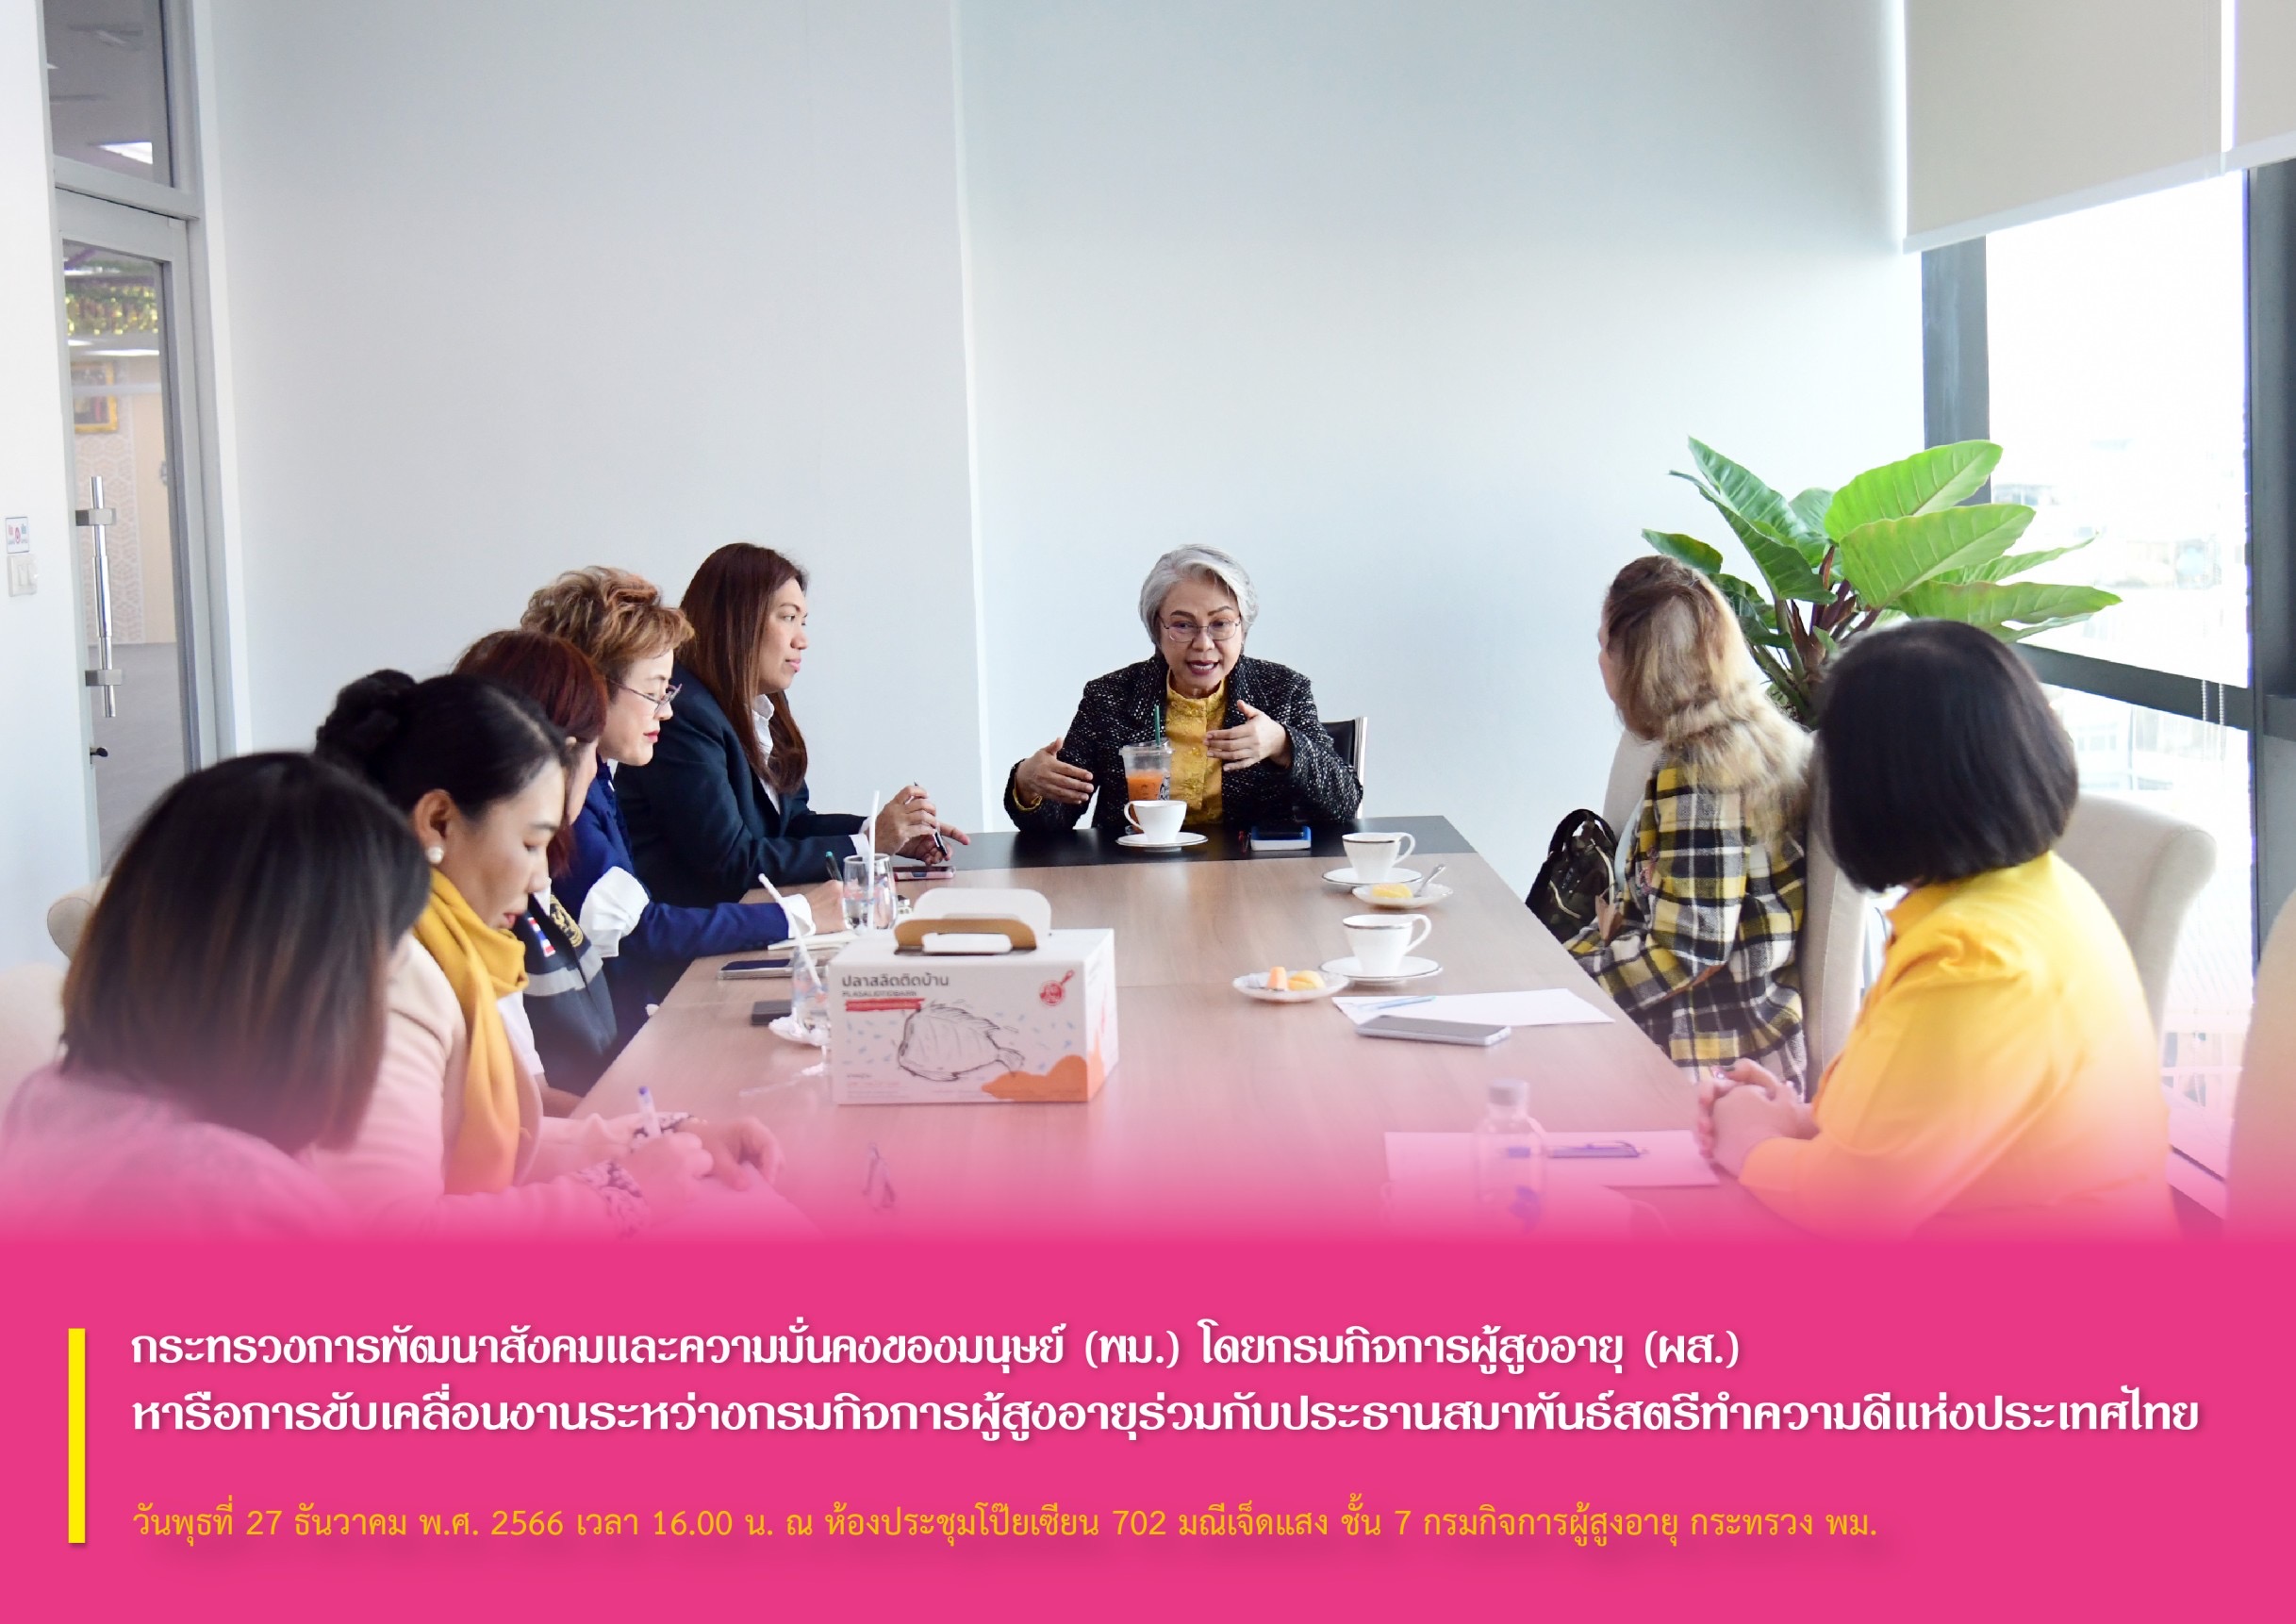 พม. โดยกรมกิจการผู้สูงอายุ (ผส.) หารือการขับเคลื่อนงานระหว่างกรมกิจการผู้สูงอายุร่วมกับประธานสมาพันธ์สตรีทำความดีแห่งประเทศไทย